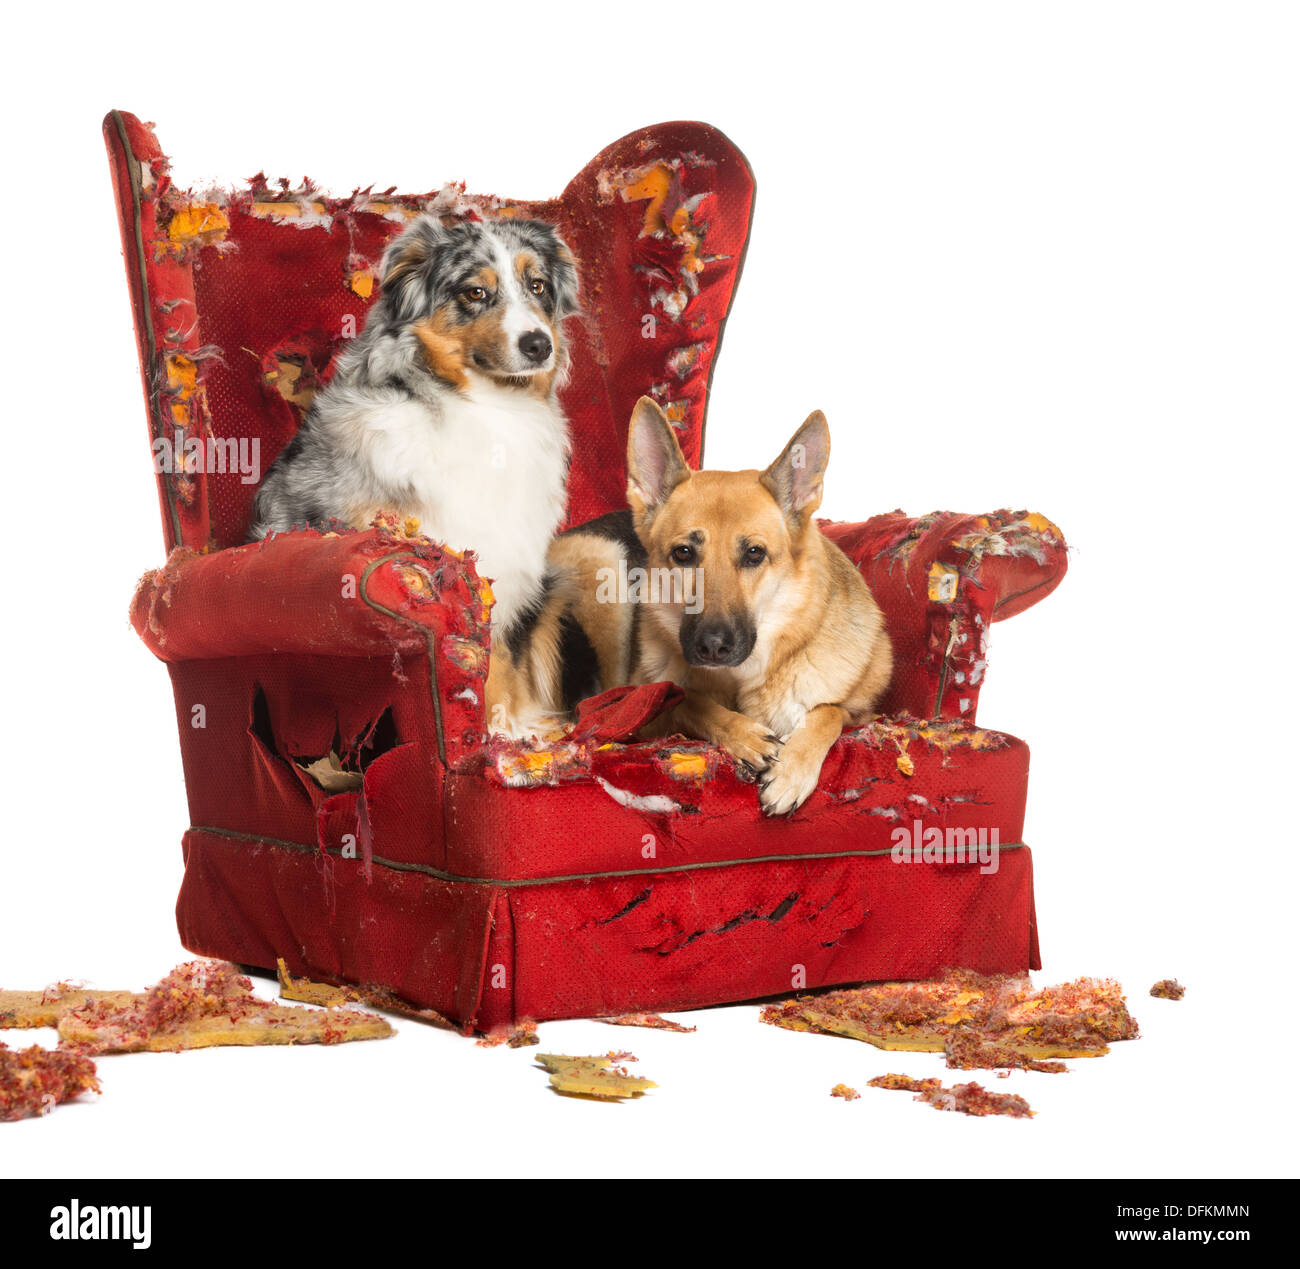 L'allemand et l'Australian Shepherd Dog sur un fauteuil détruit against white background Banque D'Images